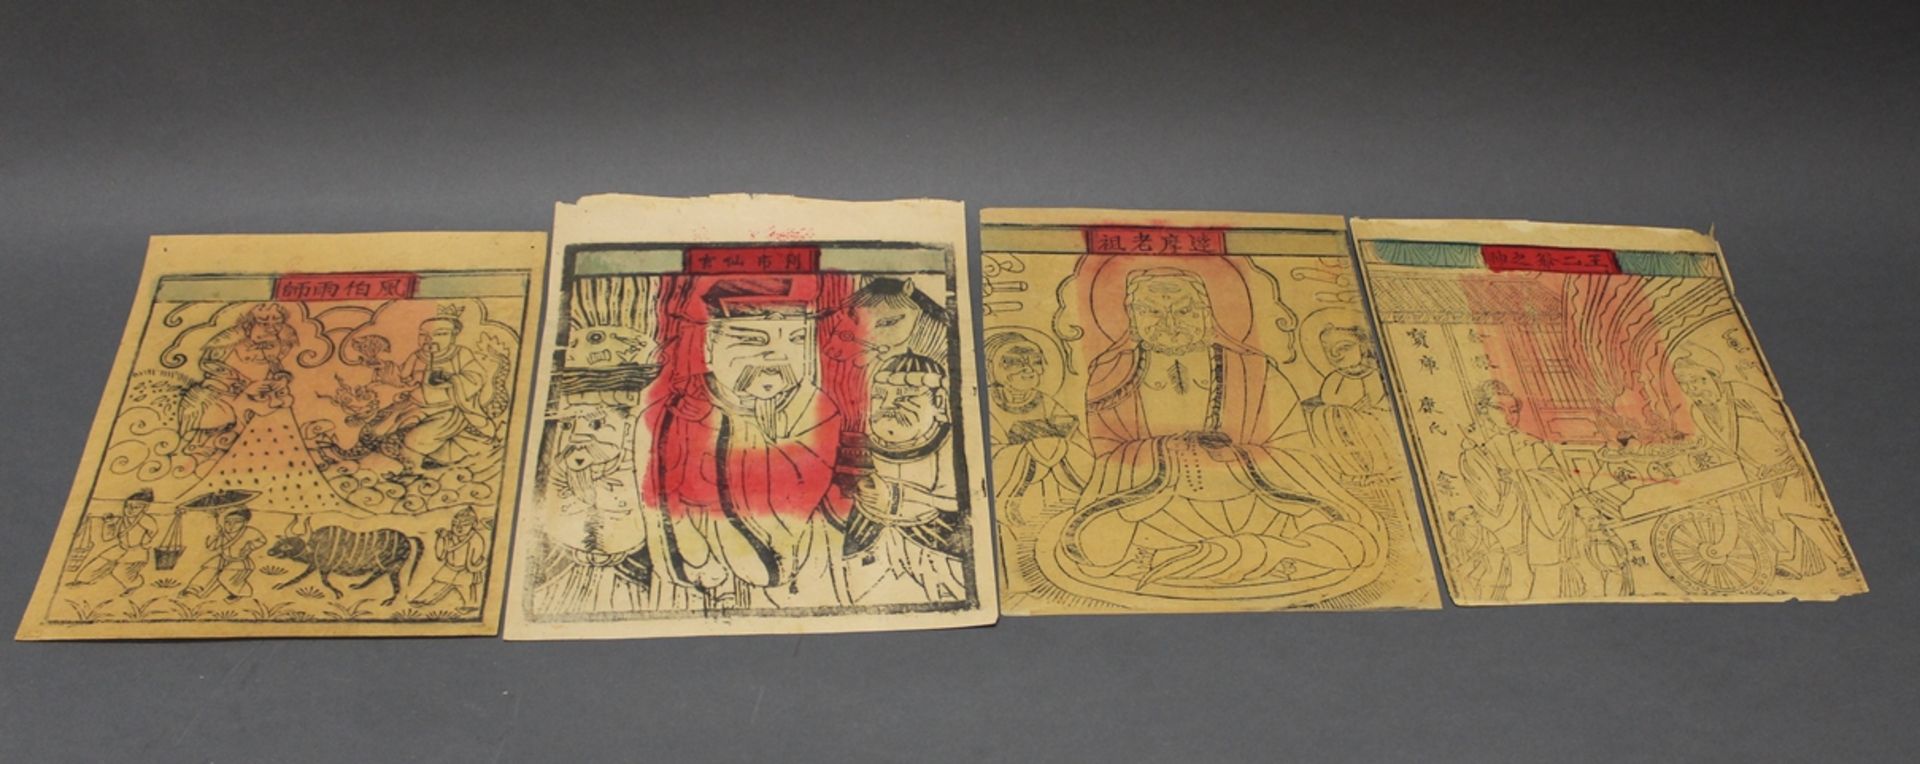 5 Holzschnitte, "Daoistische Gottheiten", China, 20. Jh., handkoloriert, diverse Formate